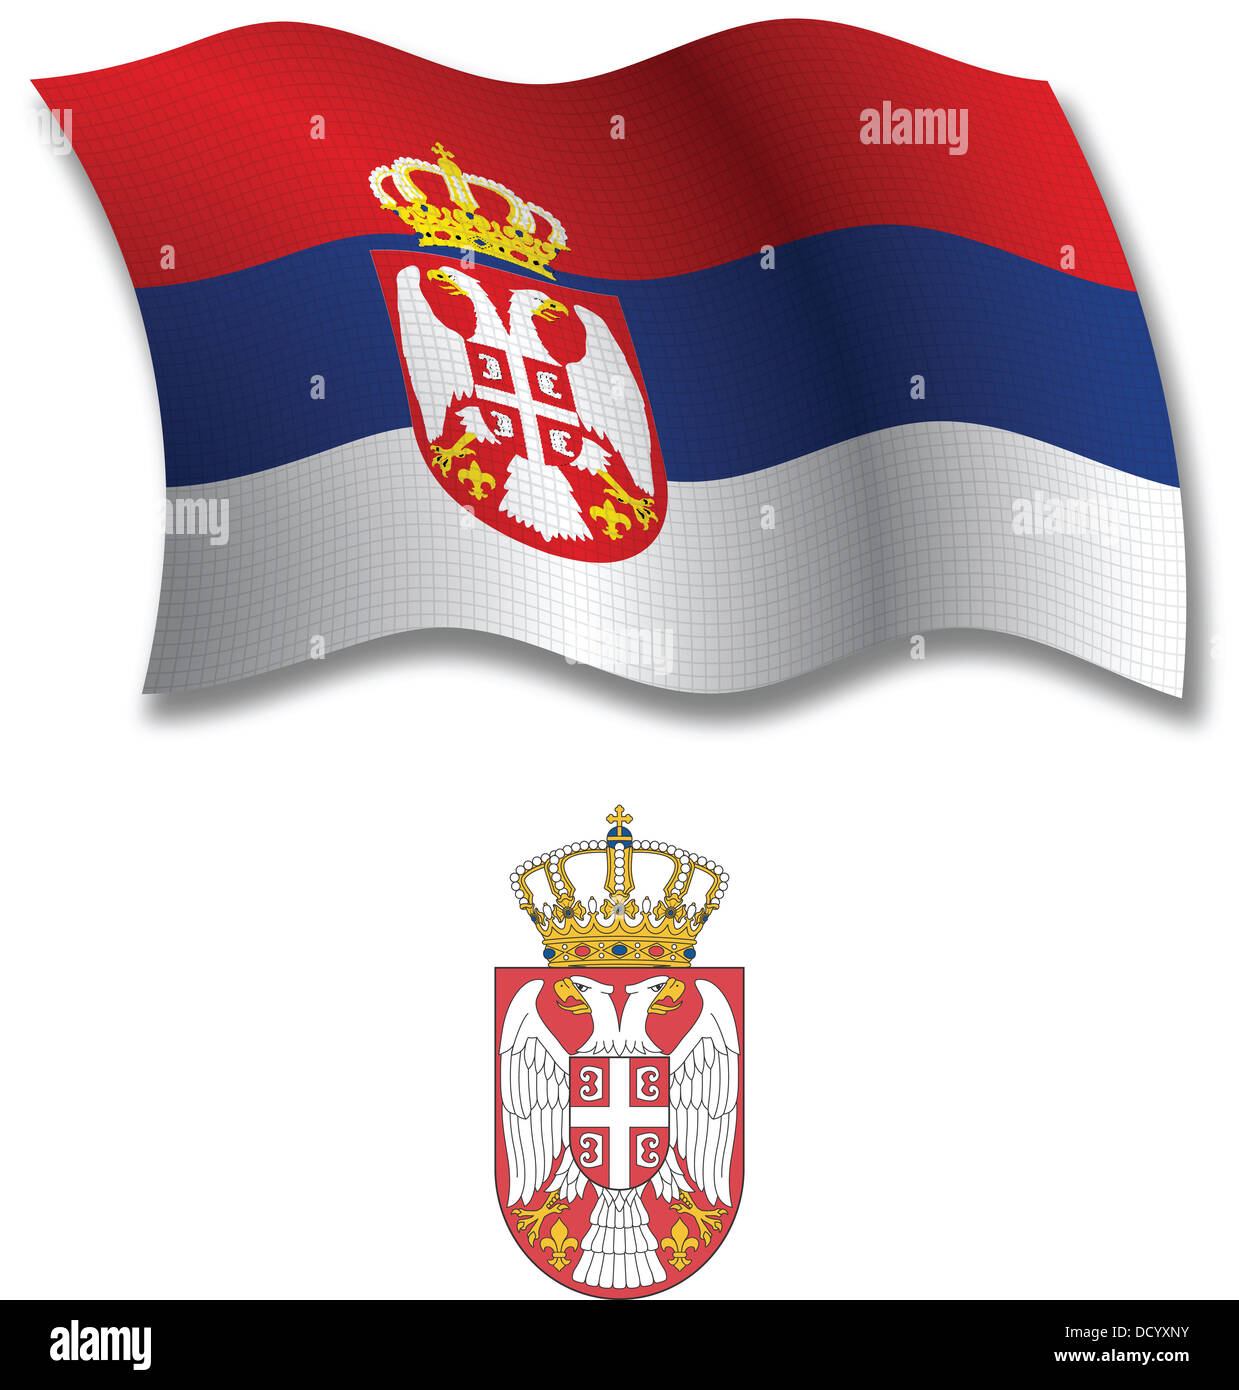 La Serbia di shadowing ondulata testurizzata bandiera e stemma contro uno sfondo bianco, arte vettoriale illustrazione Foto Stock